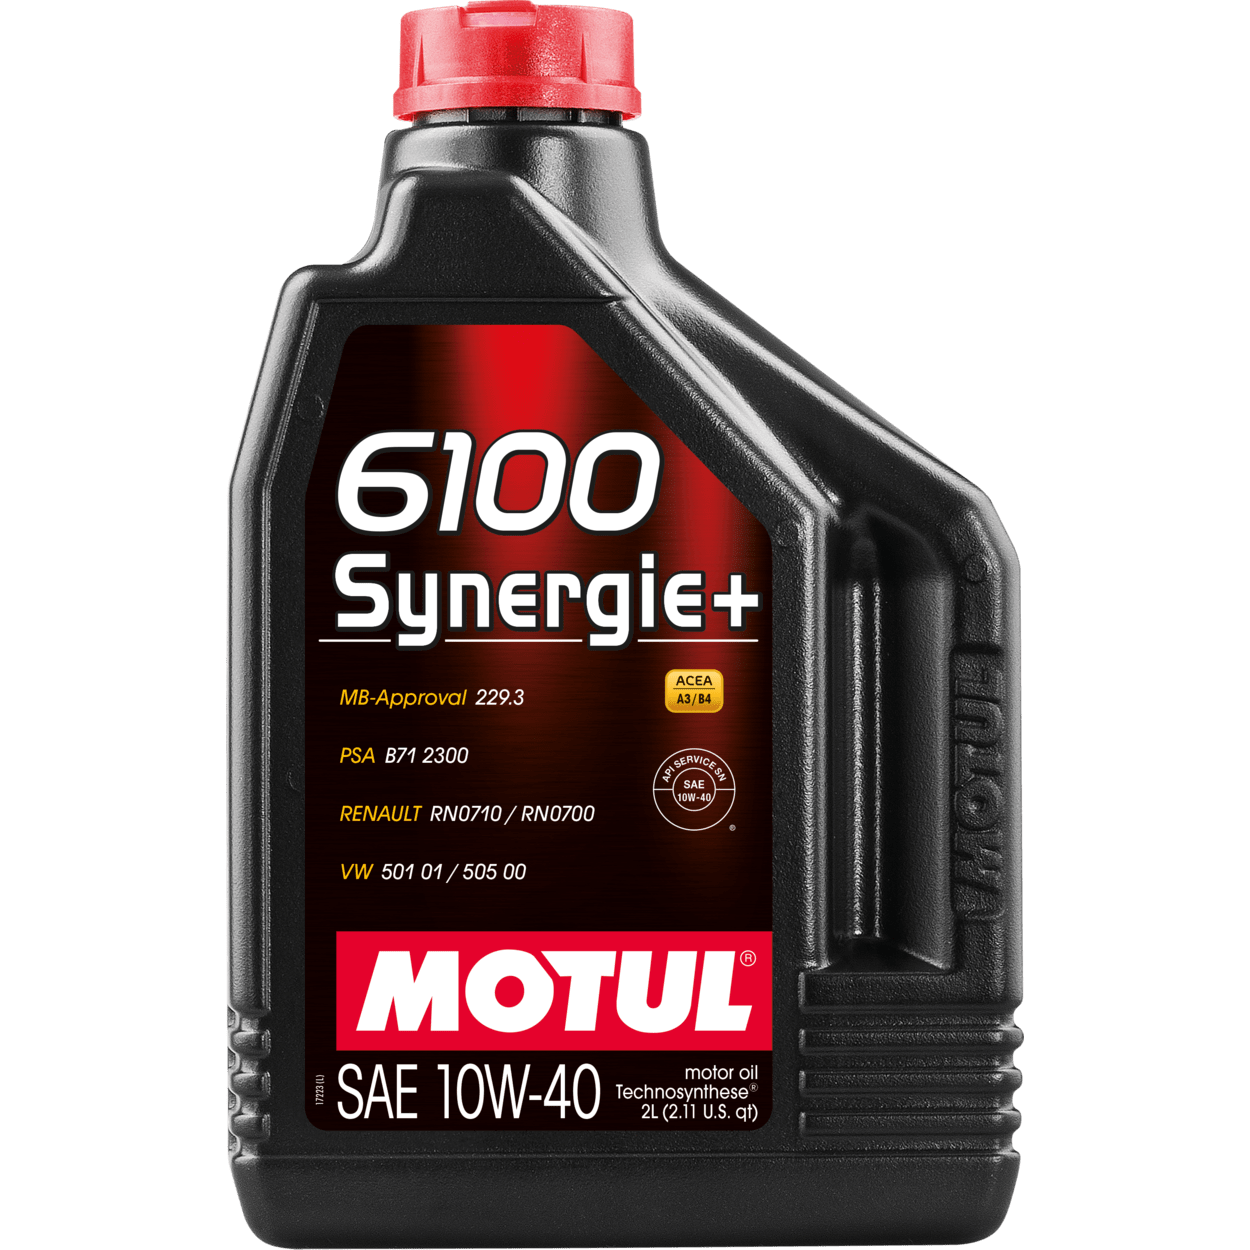 Motul 6100 Synergie+ 10W40